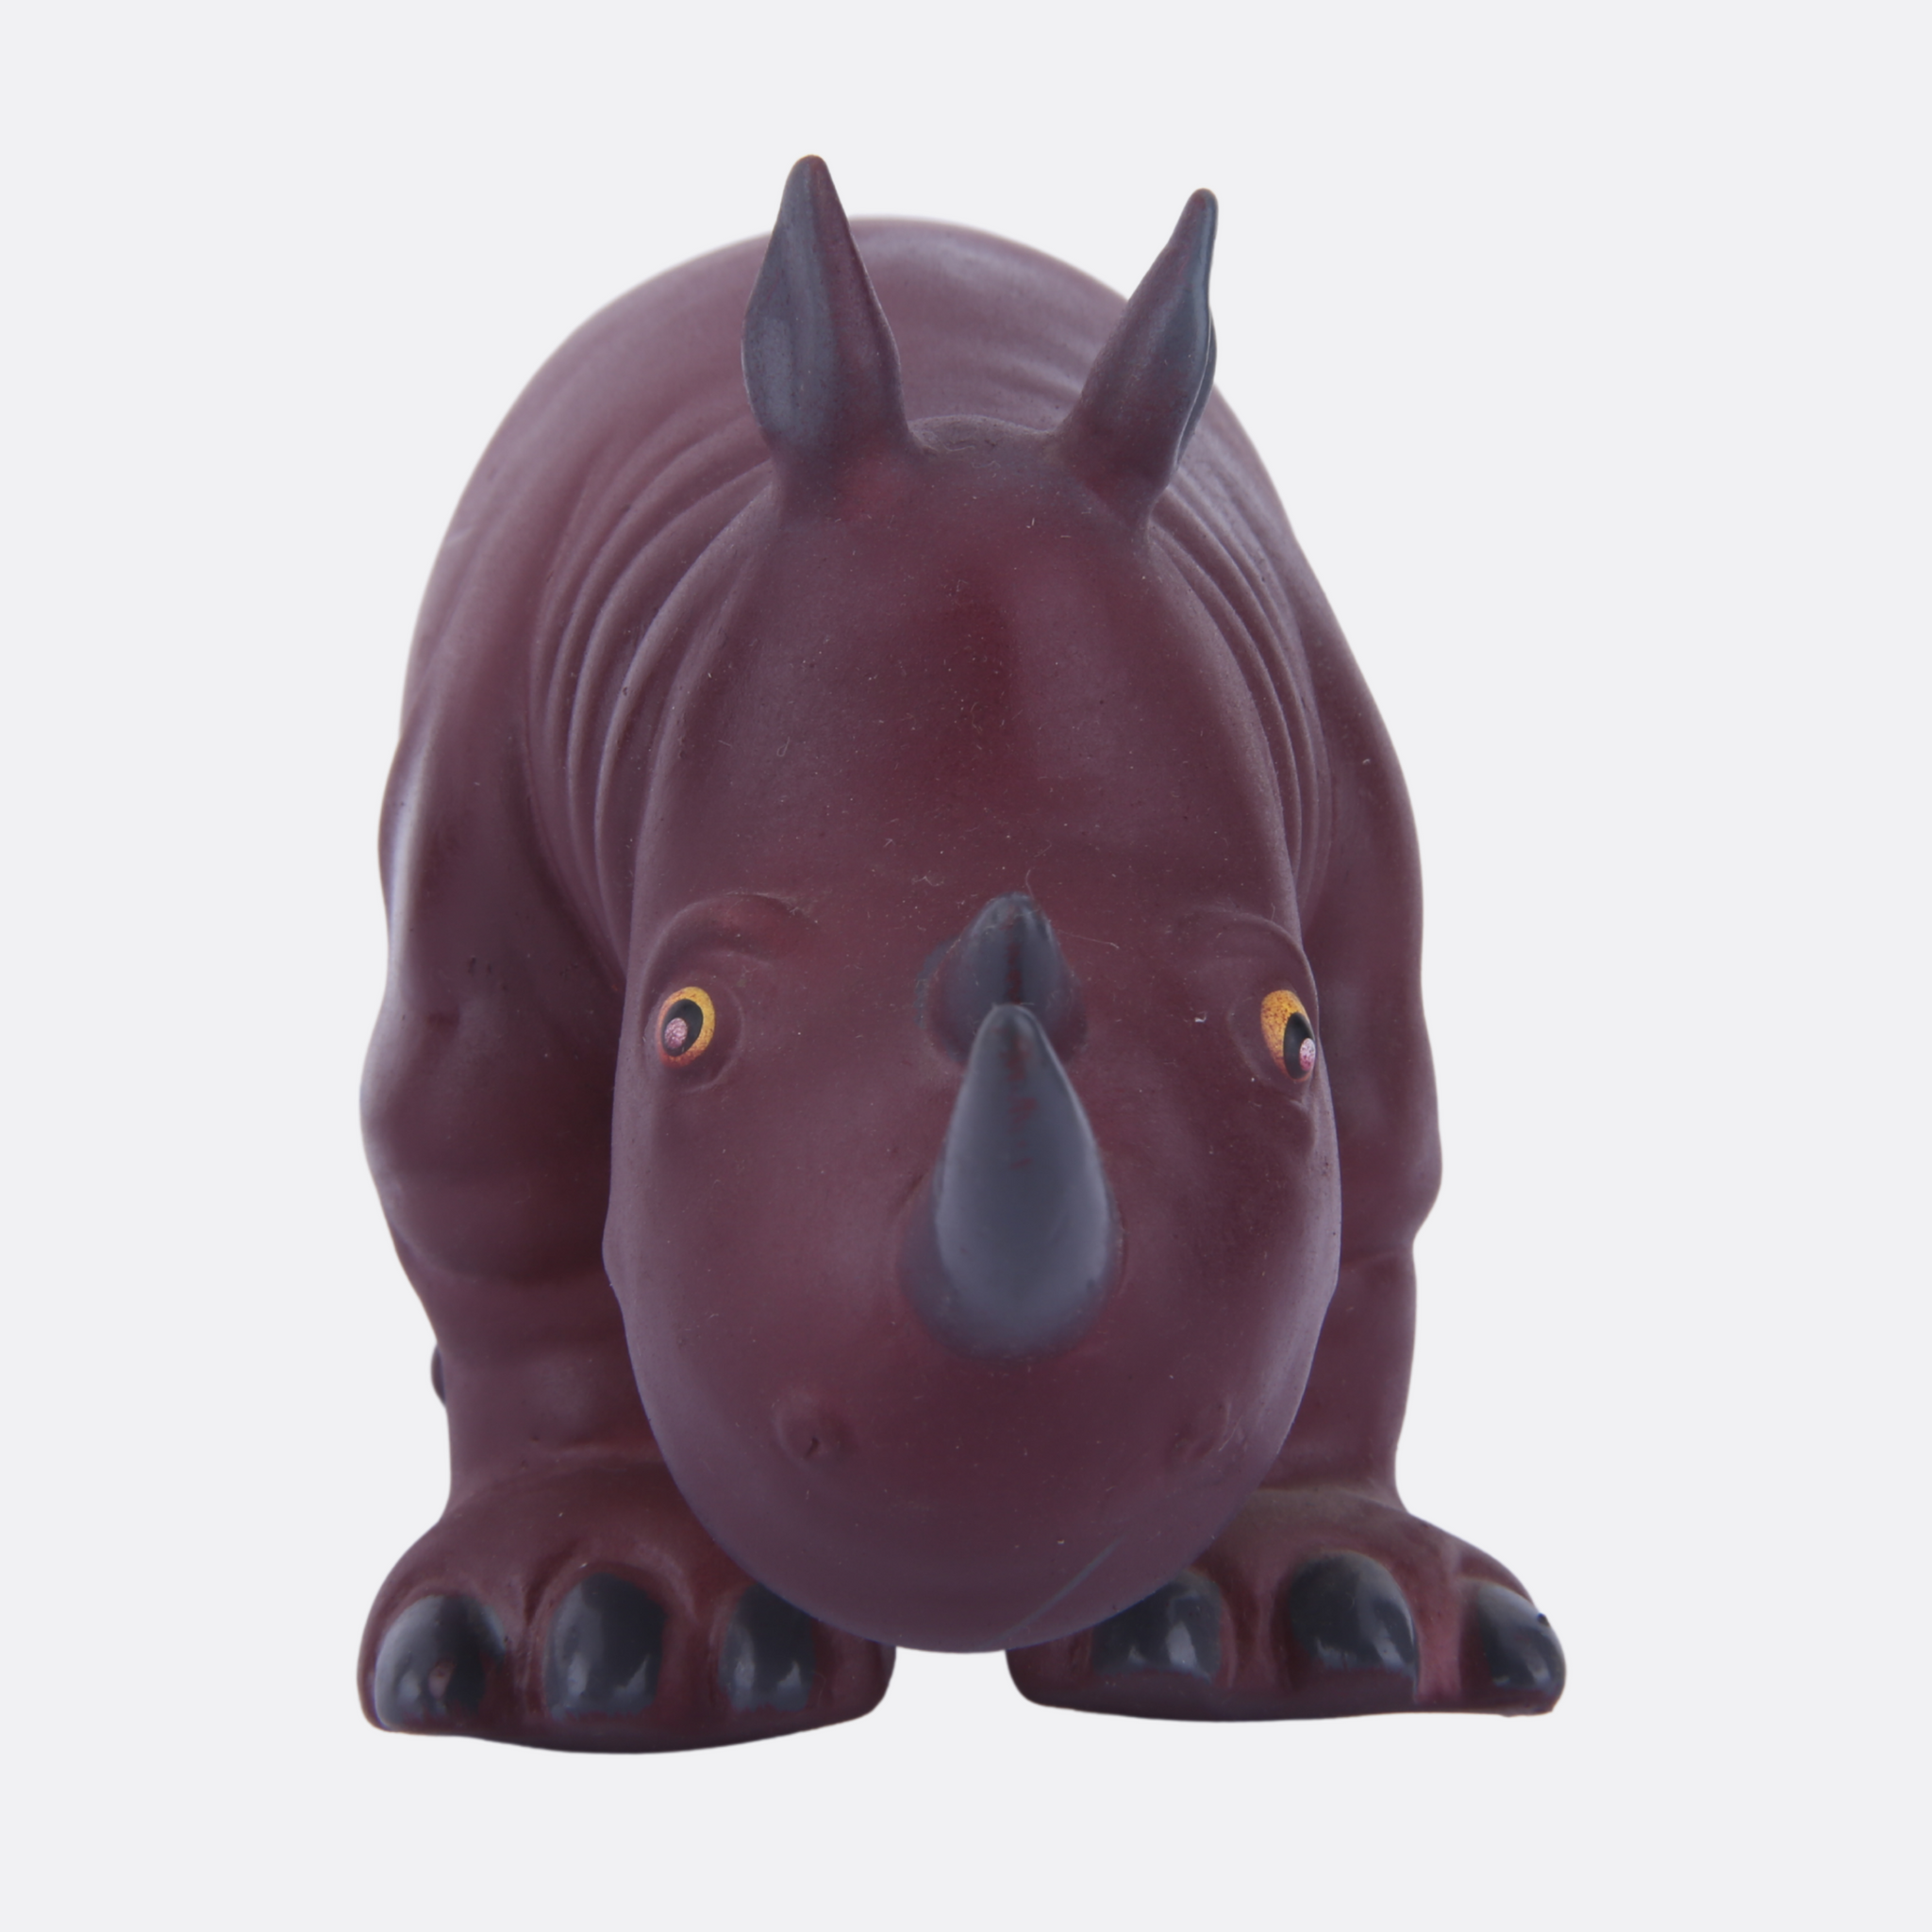 Squishy Rhinoceros toy